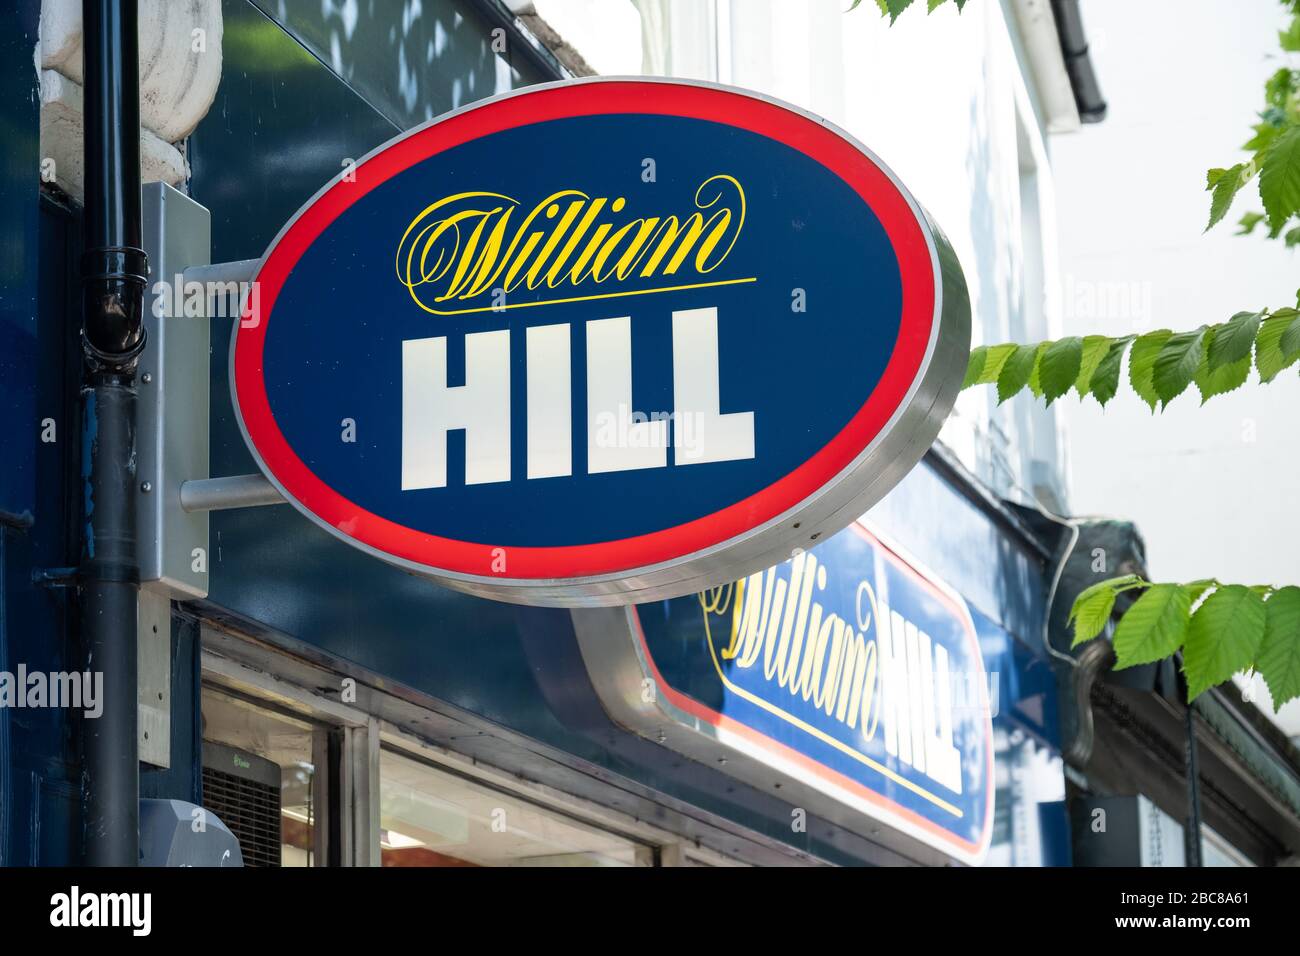 William Hill- librería de calle alta / tienda de apuestas - logotipo exterior / señalización- Londres Foto de stock